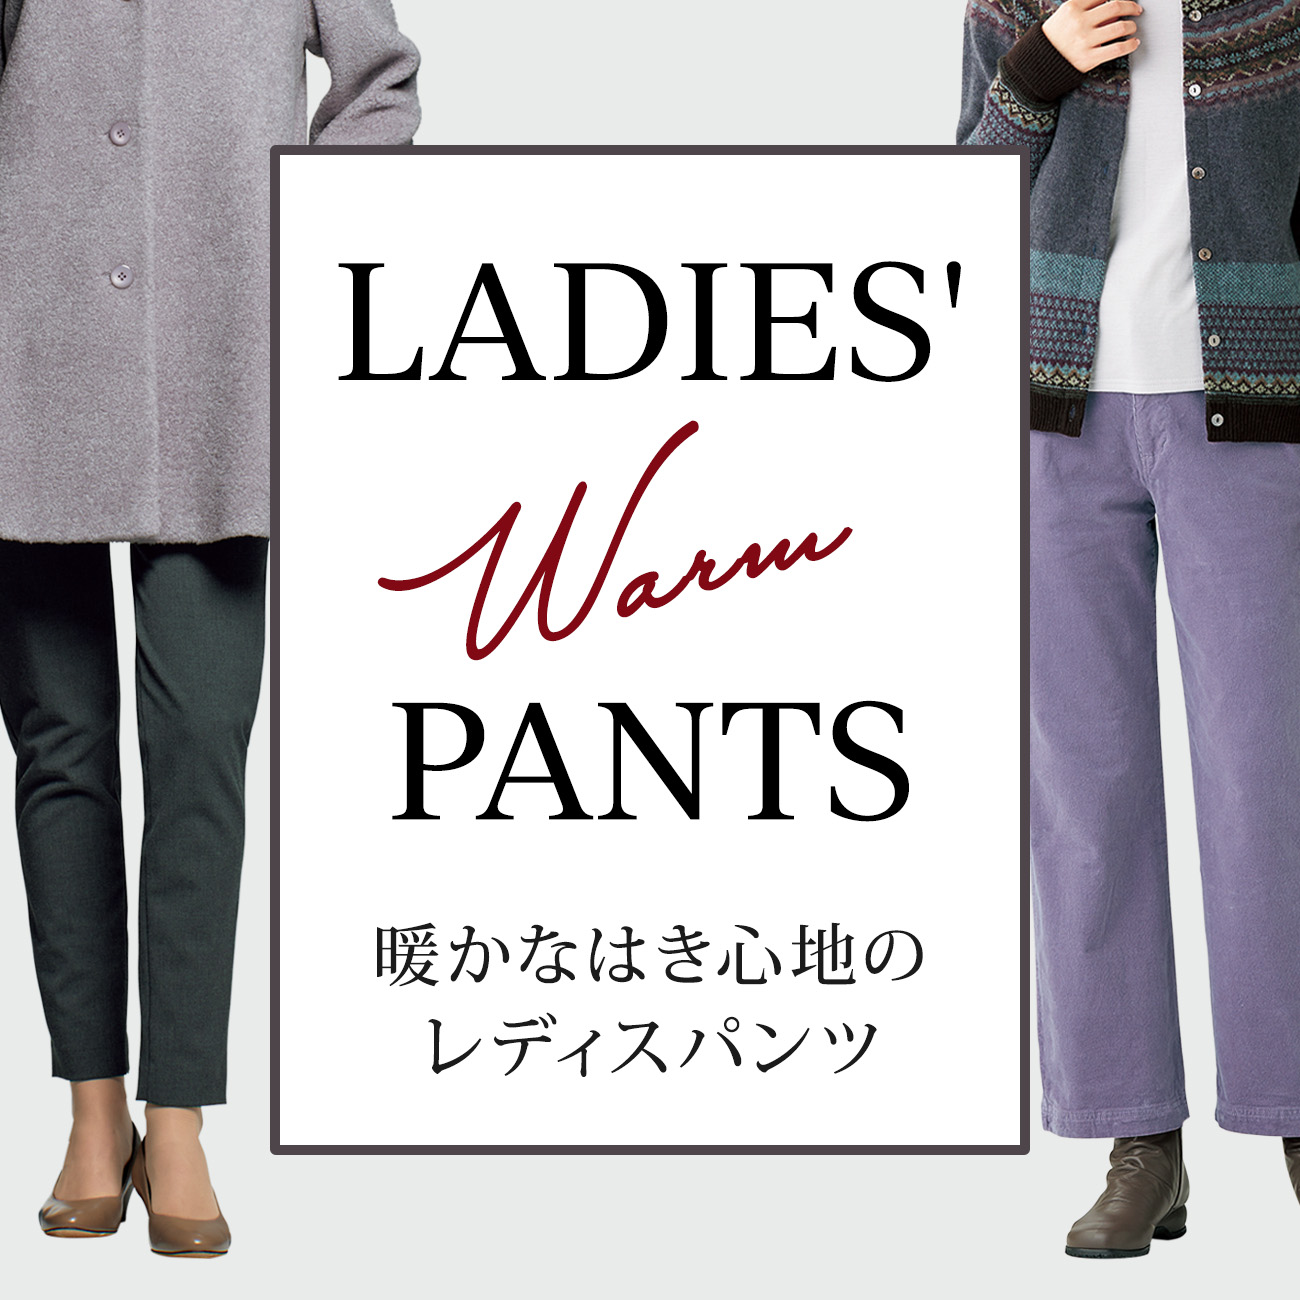 【特集】暖かパンツ for Ladies 